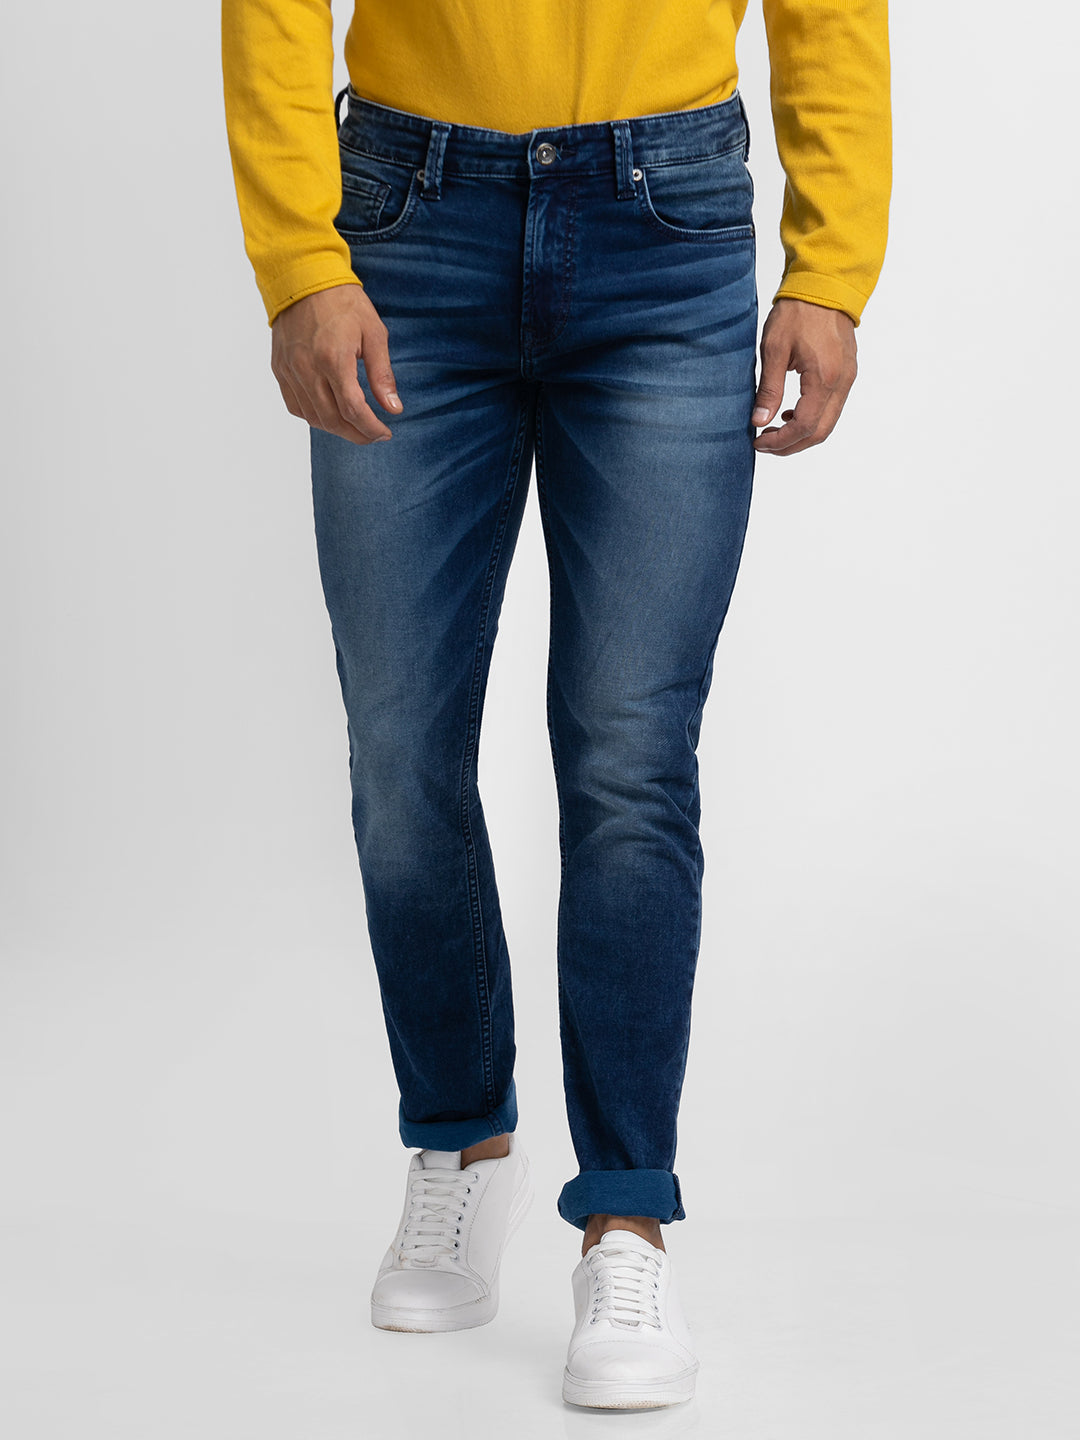 Spykar Blue Indigo Cotton Regular Fit Narrow Length Jeans For Men (Rover)